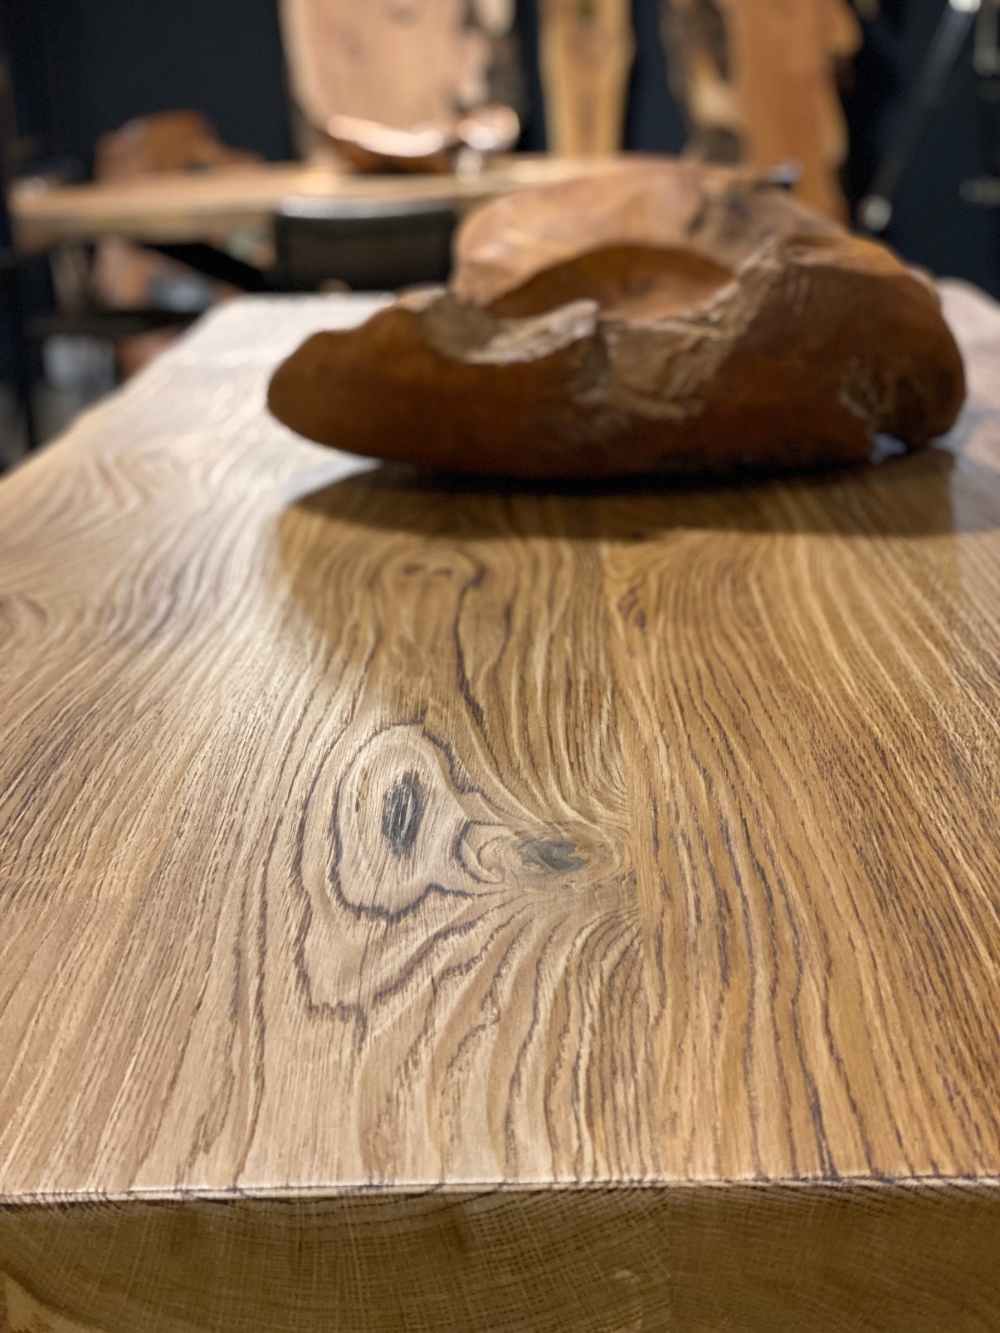 Tavolo legno massello rustico - Gambe in ferro - Impero